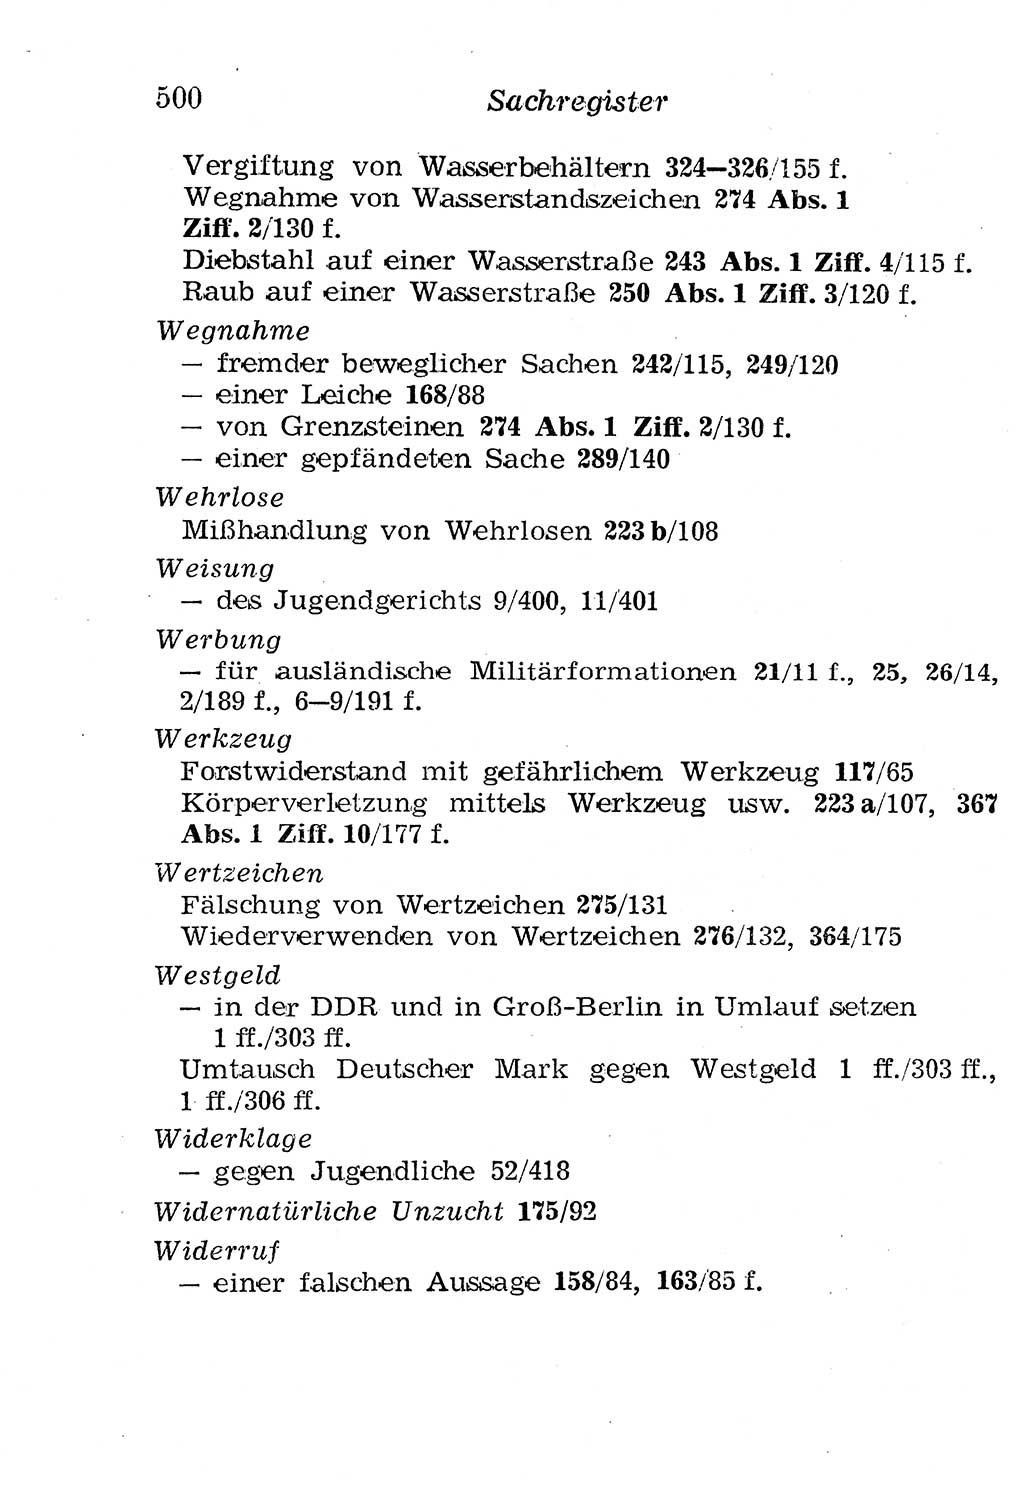 Strafgesetzbuch (StGB) und andere Strafgesetze [Deutsche Demokratische Republik (DDR)] 1958, Seite 500 (StGB Strafges. DDR 1958, S. 500)